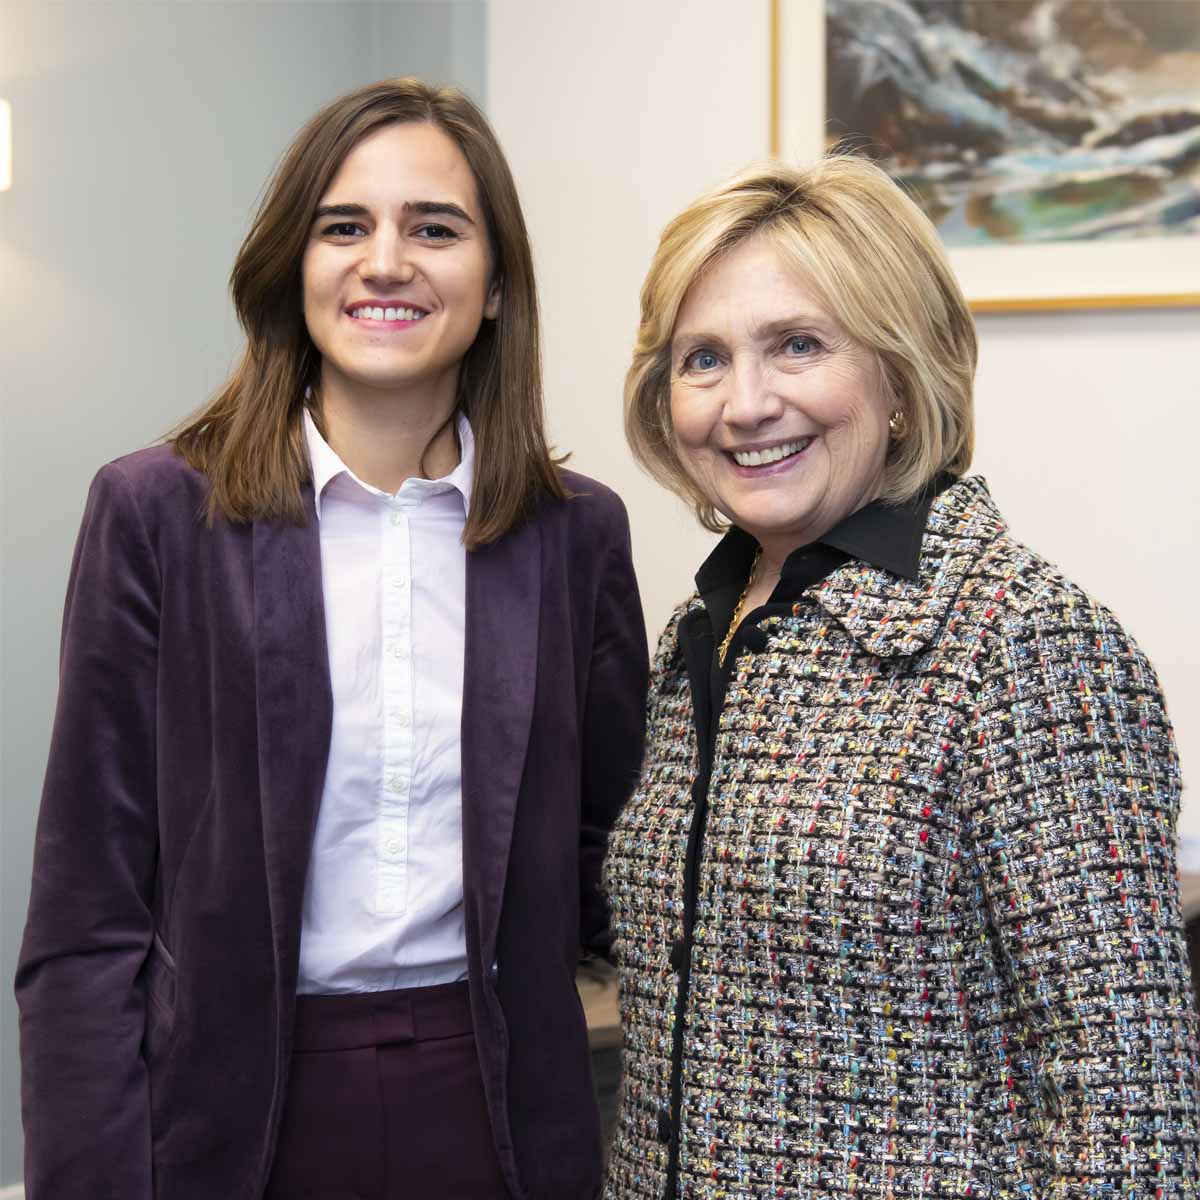 Andrea with Hillary Clinton